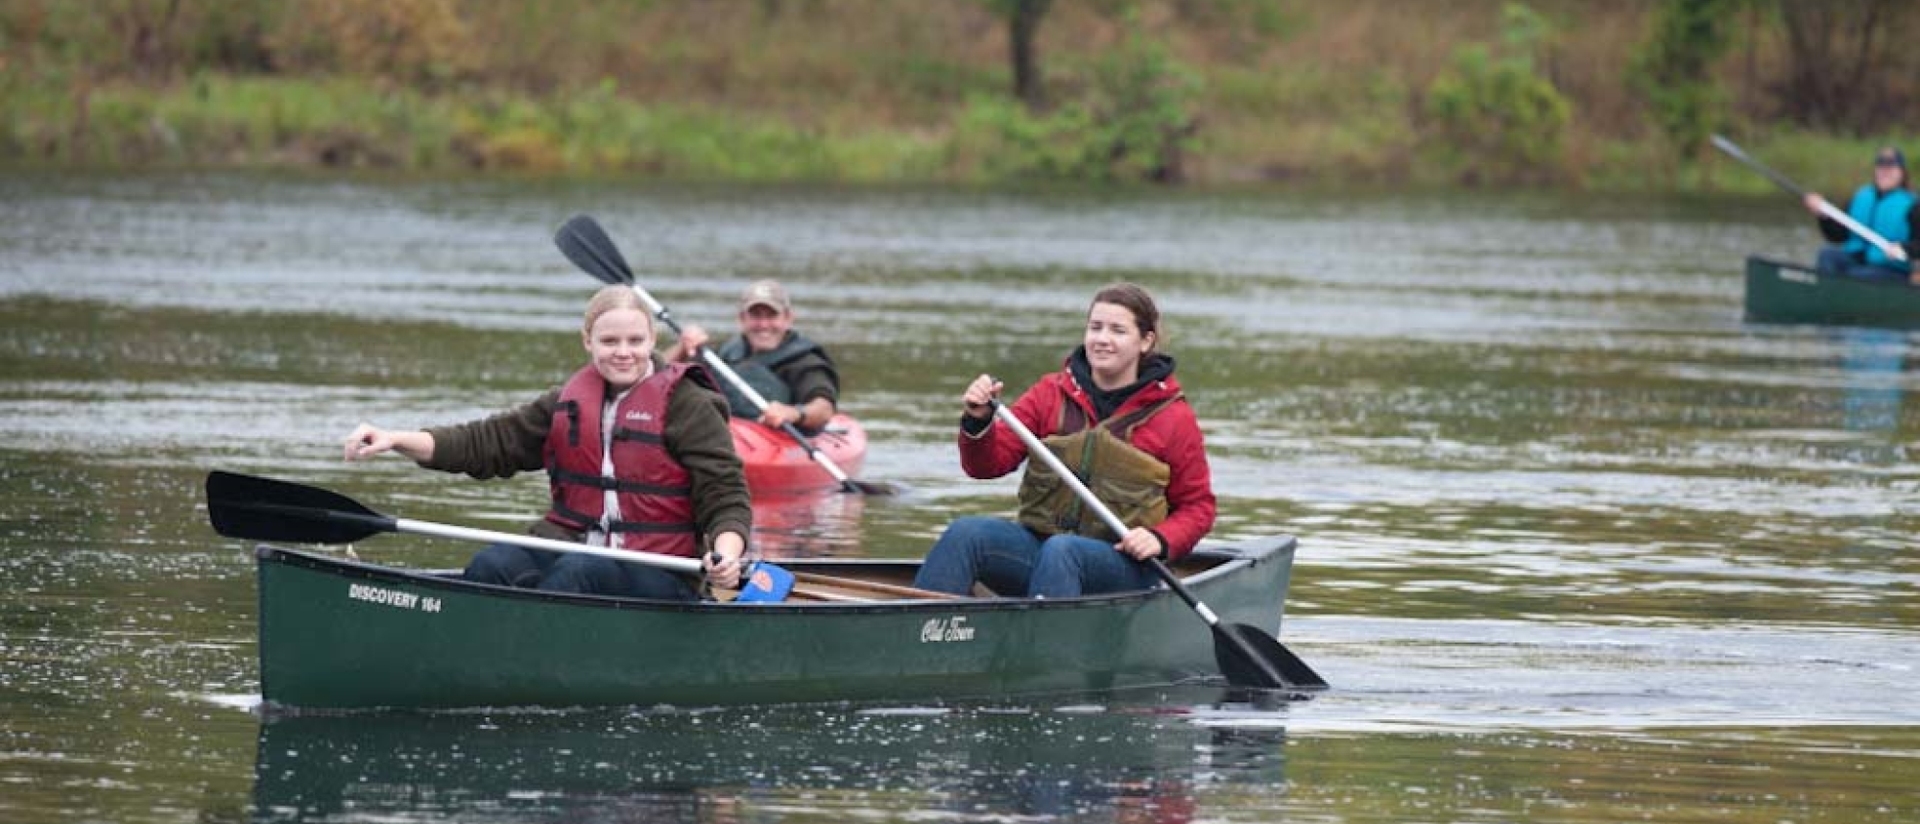 Student canoe in river